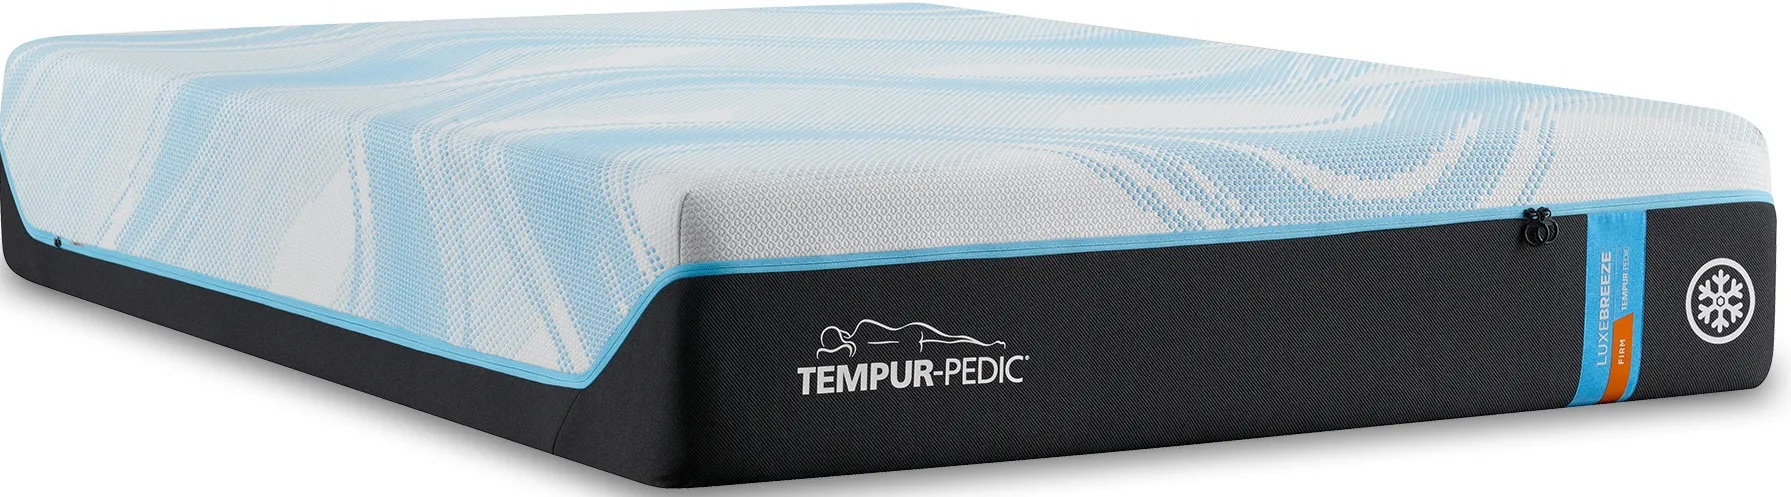 Tempur-Pedic Tempur-LuxeBreeze Twin XL Firm Mattress Only 